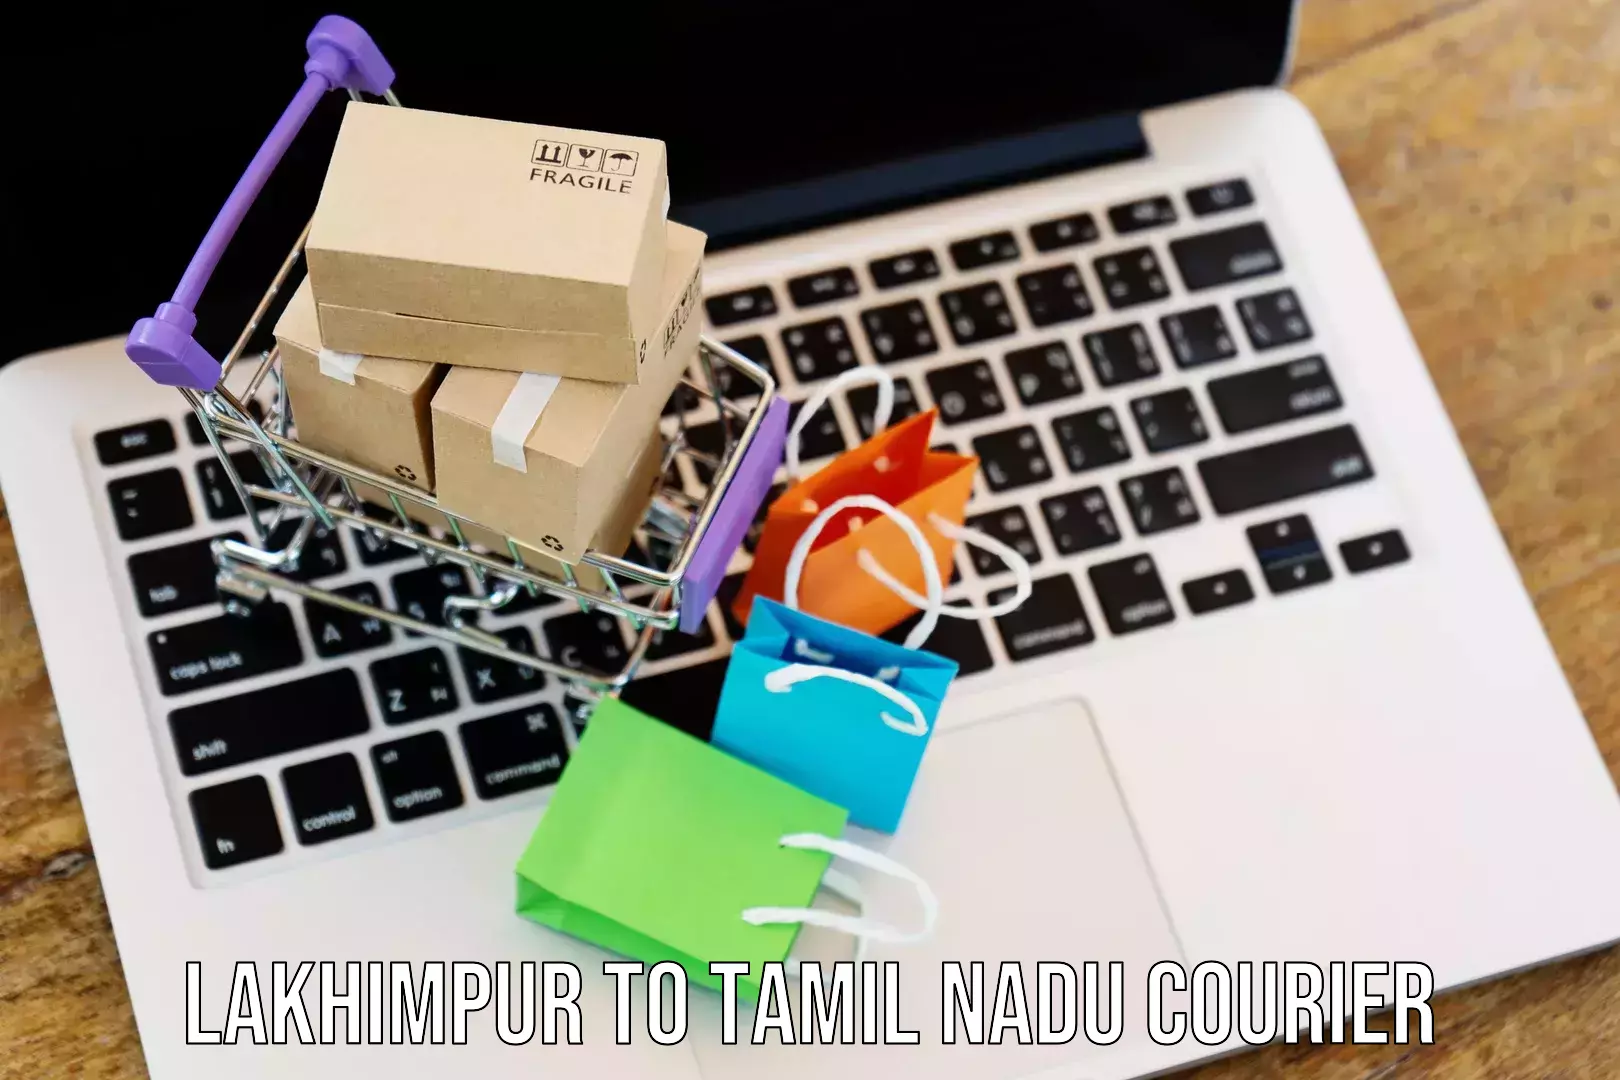 Cash on delivery service Lakhimpur to Tamil Nadu